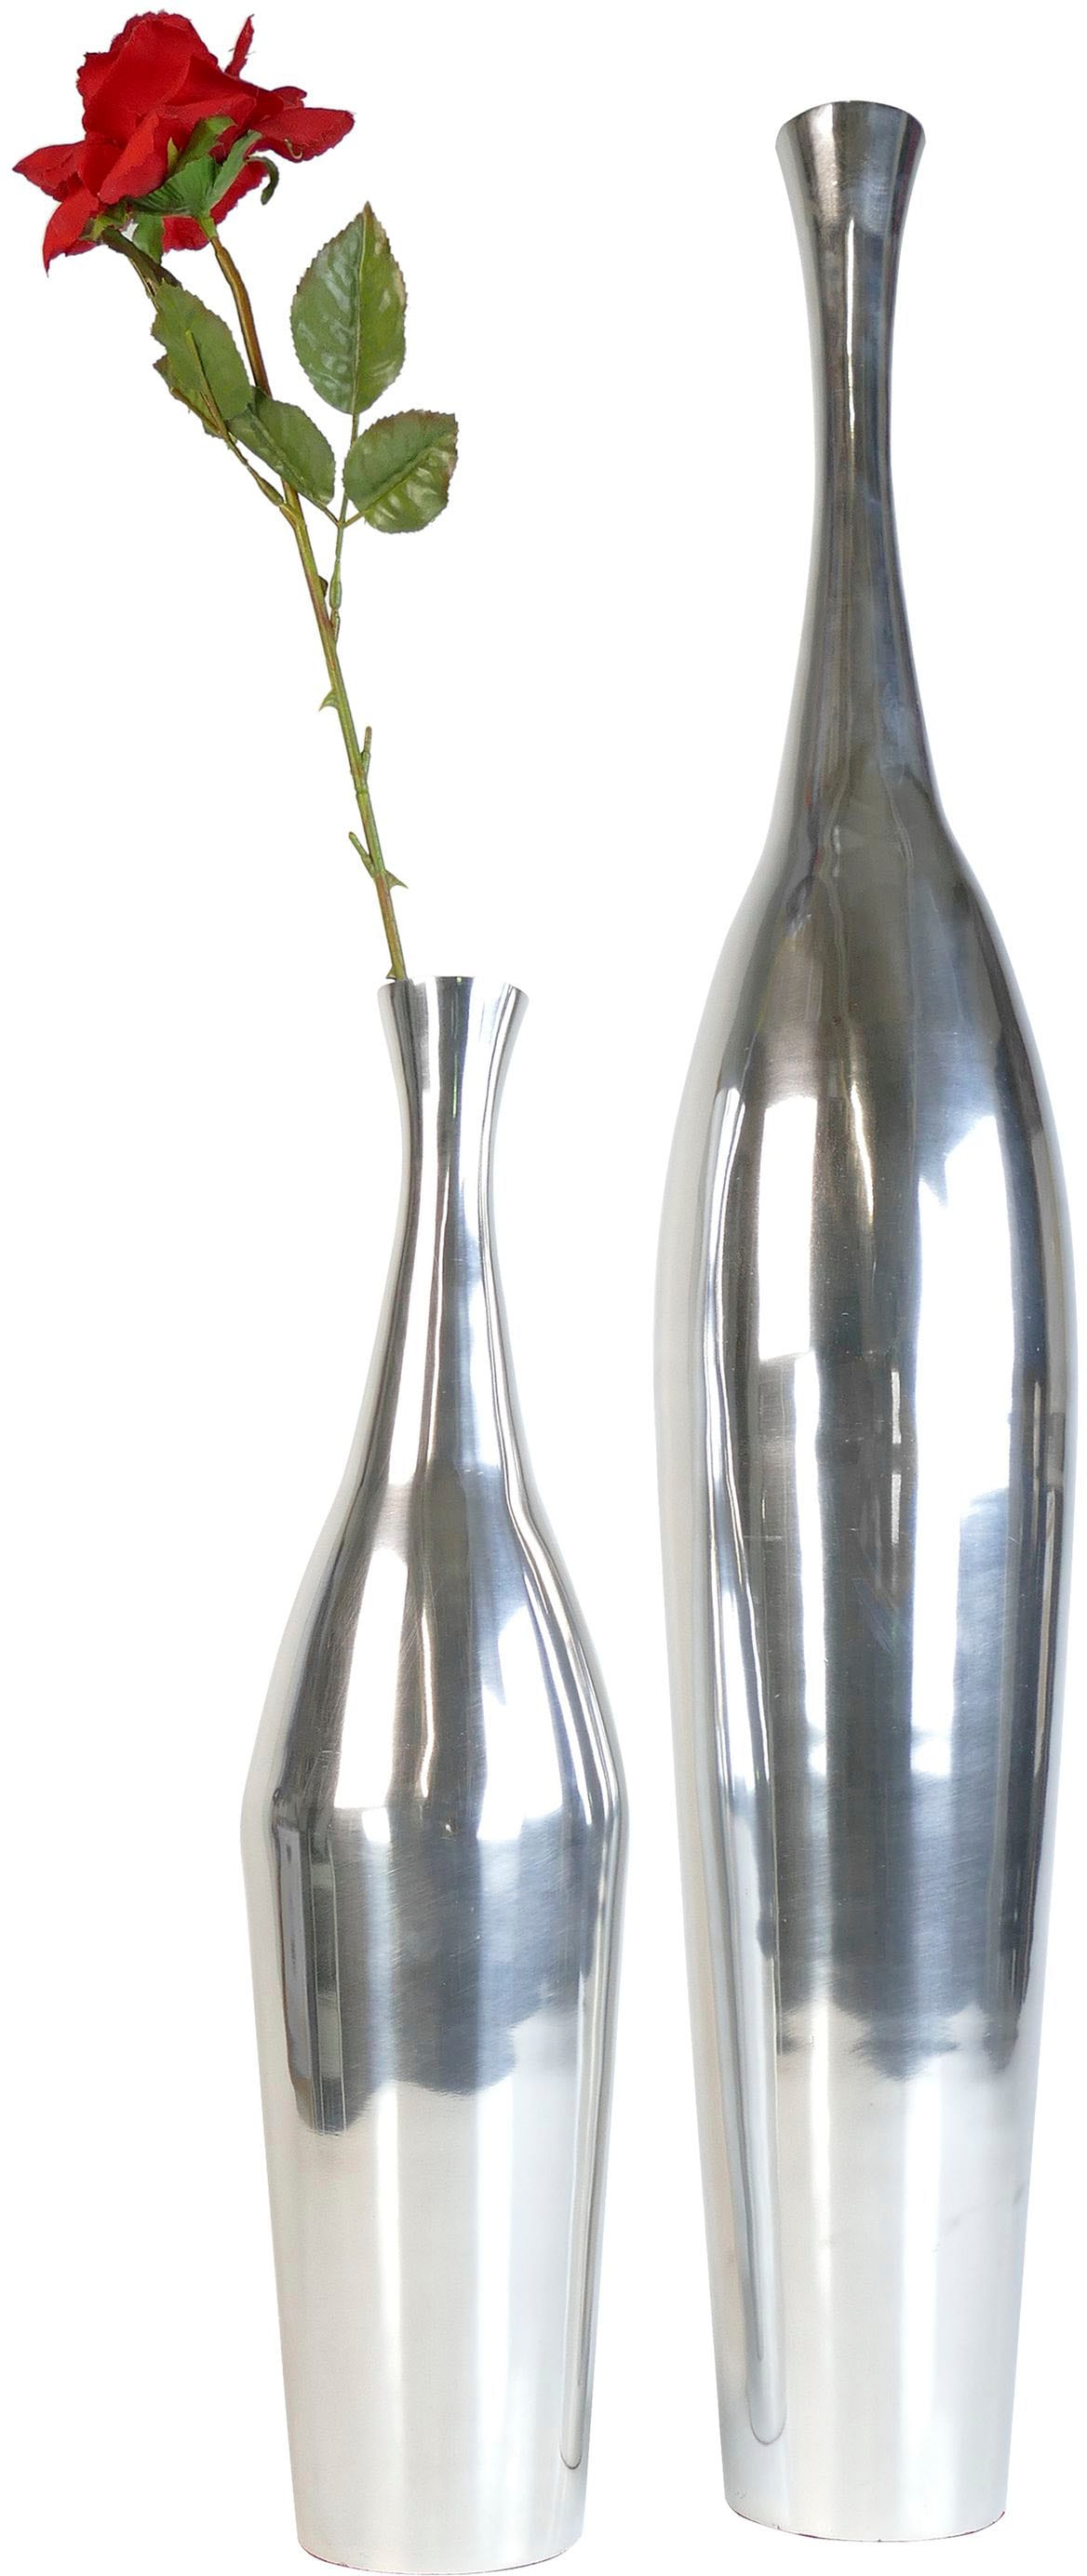 ARTRA Dekovase »Aluminiumvase \'Bottle\' M - Hoch, Dekoration« günstig kaufen